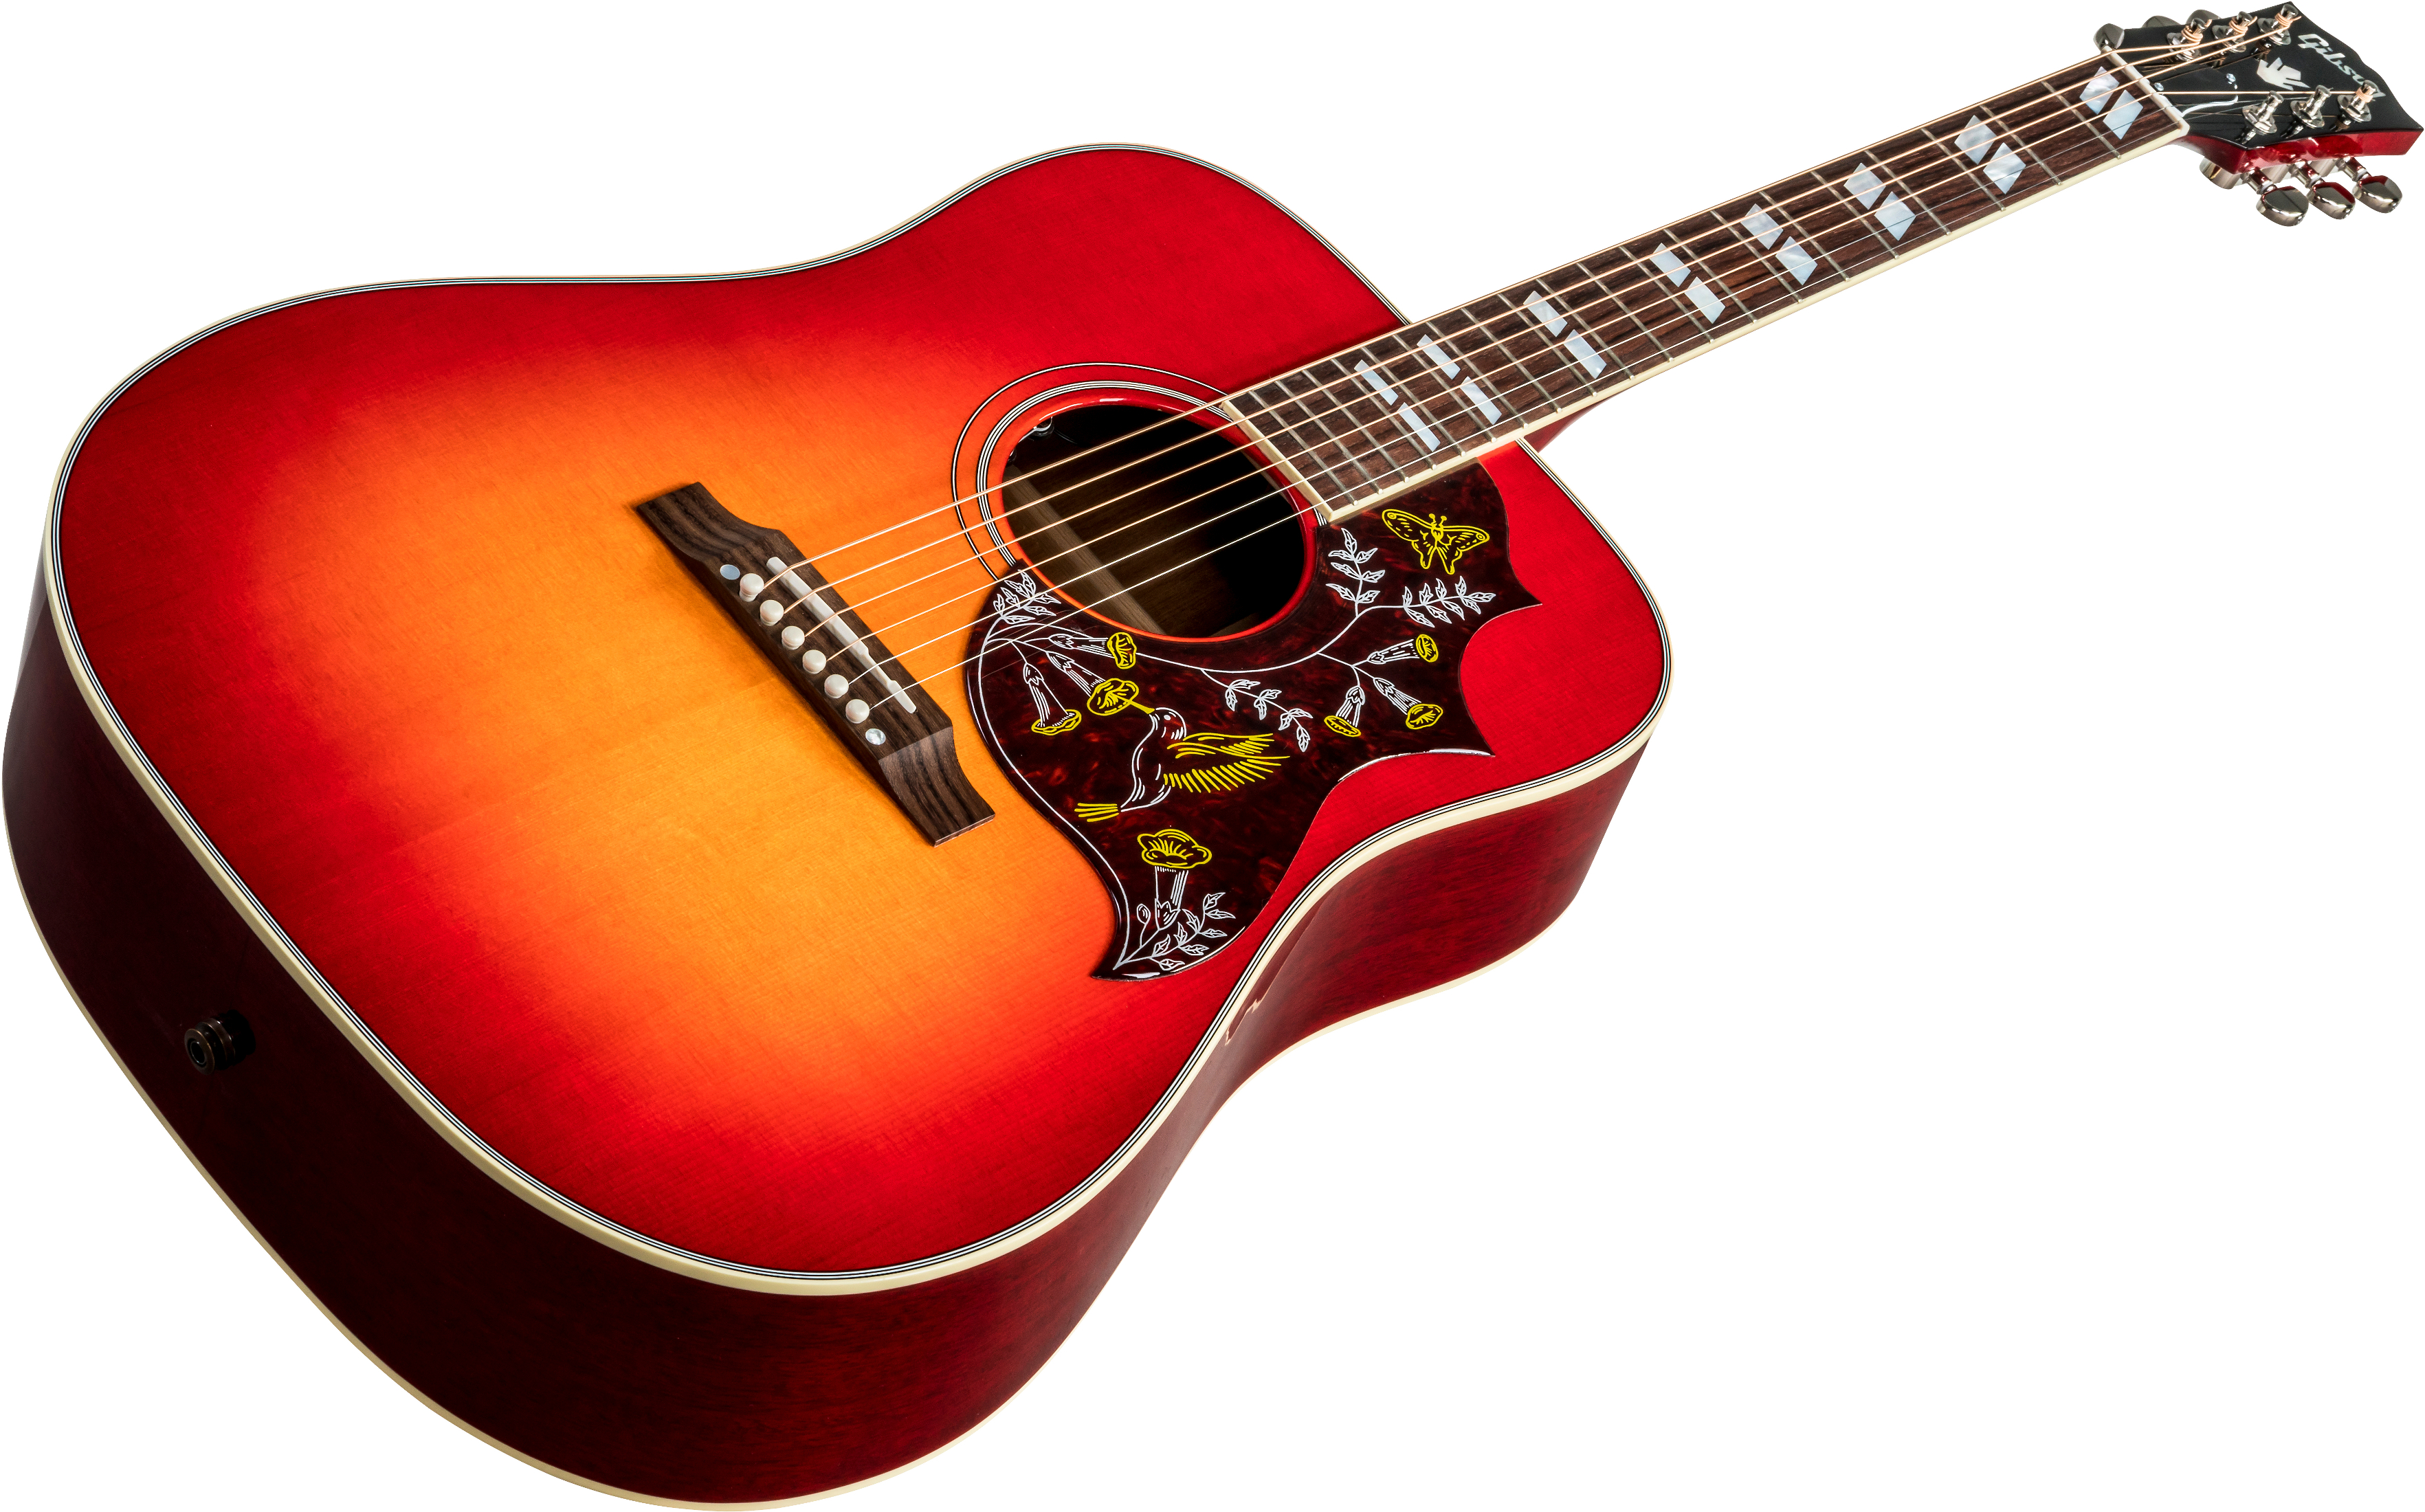 Gibson Hummingbird 2019 Dreadnought Epicea Acajou Rw - Vintage Cherry Sunburst - Guitarra acústica & electro - Variation 4